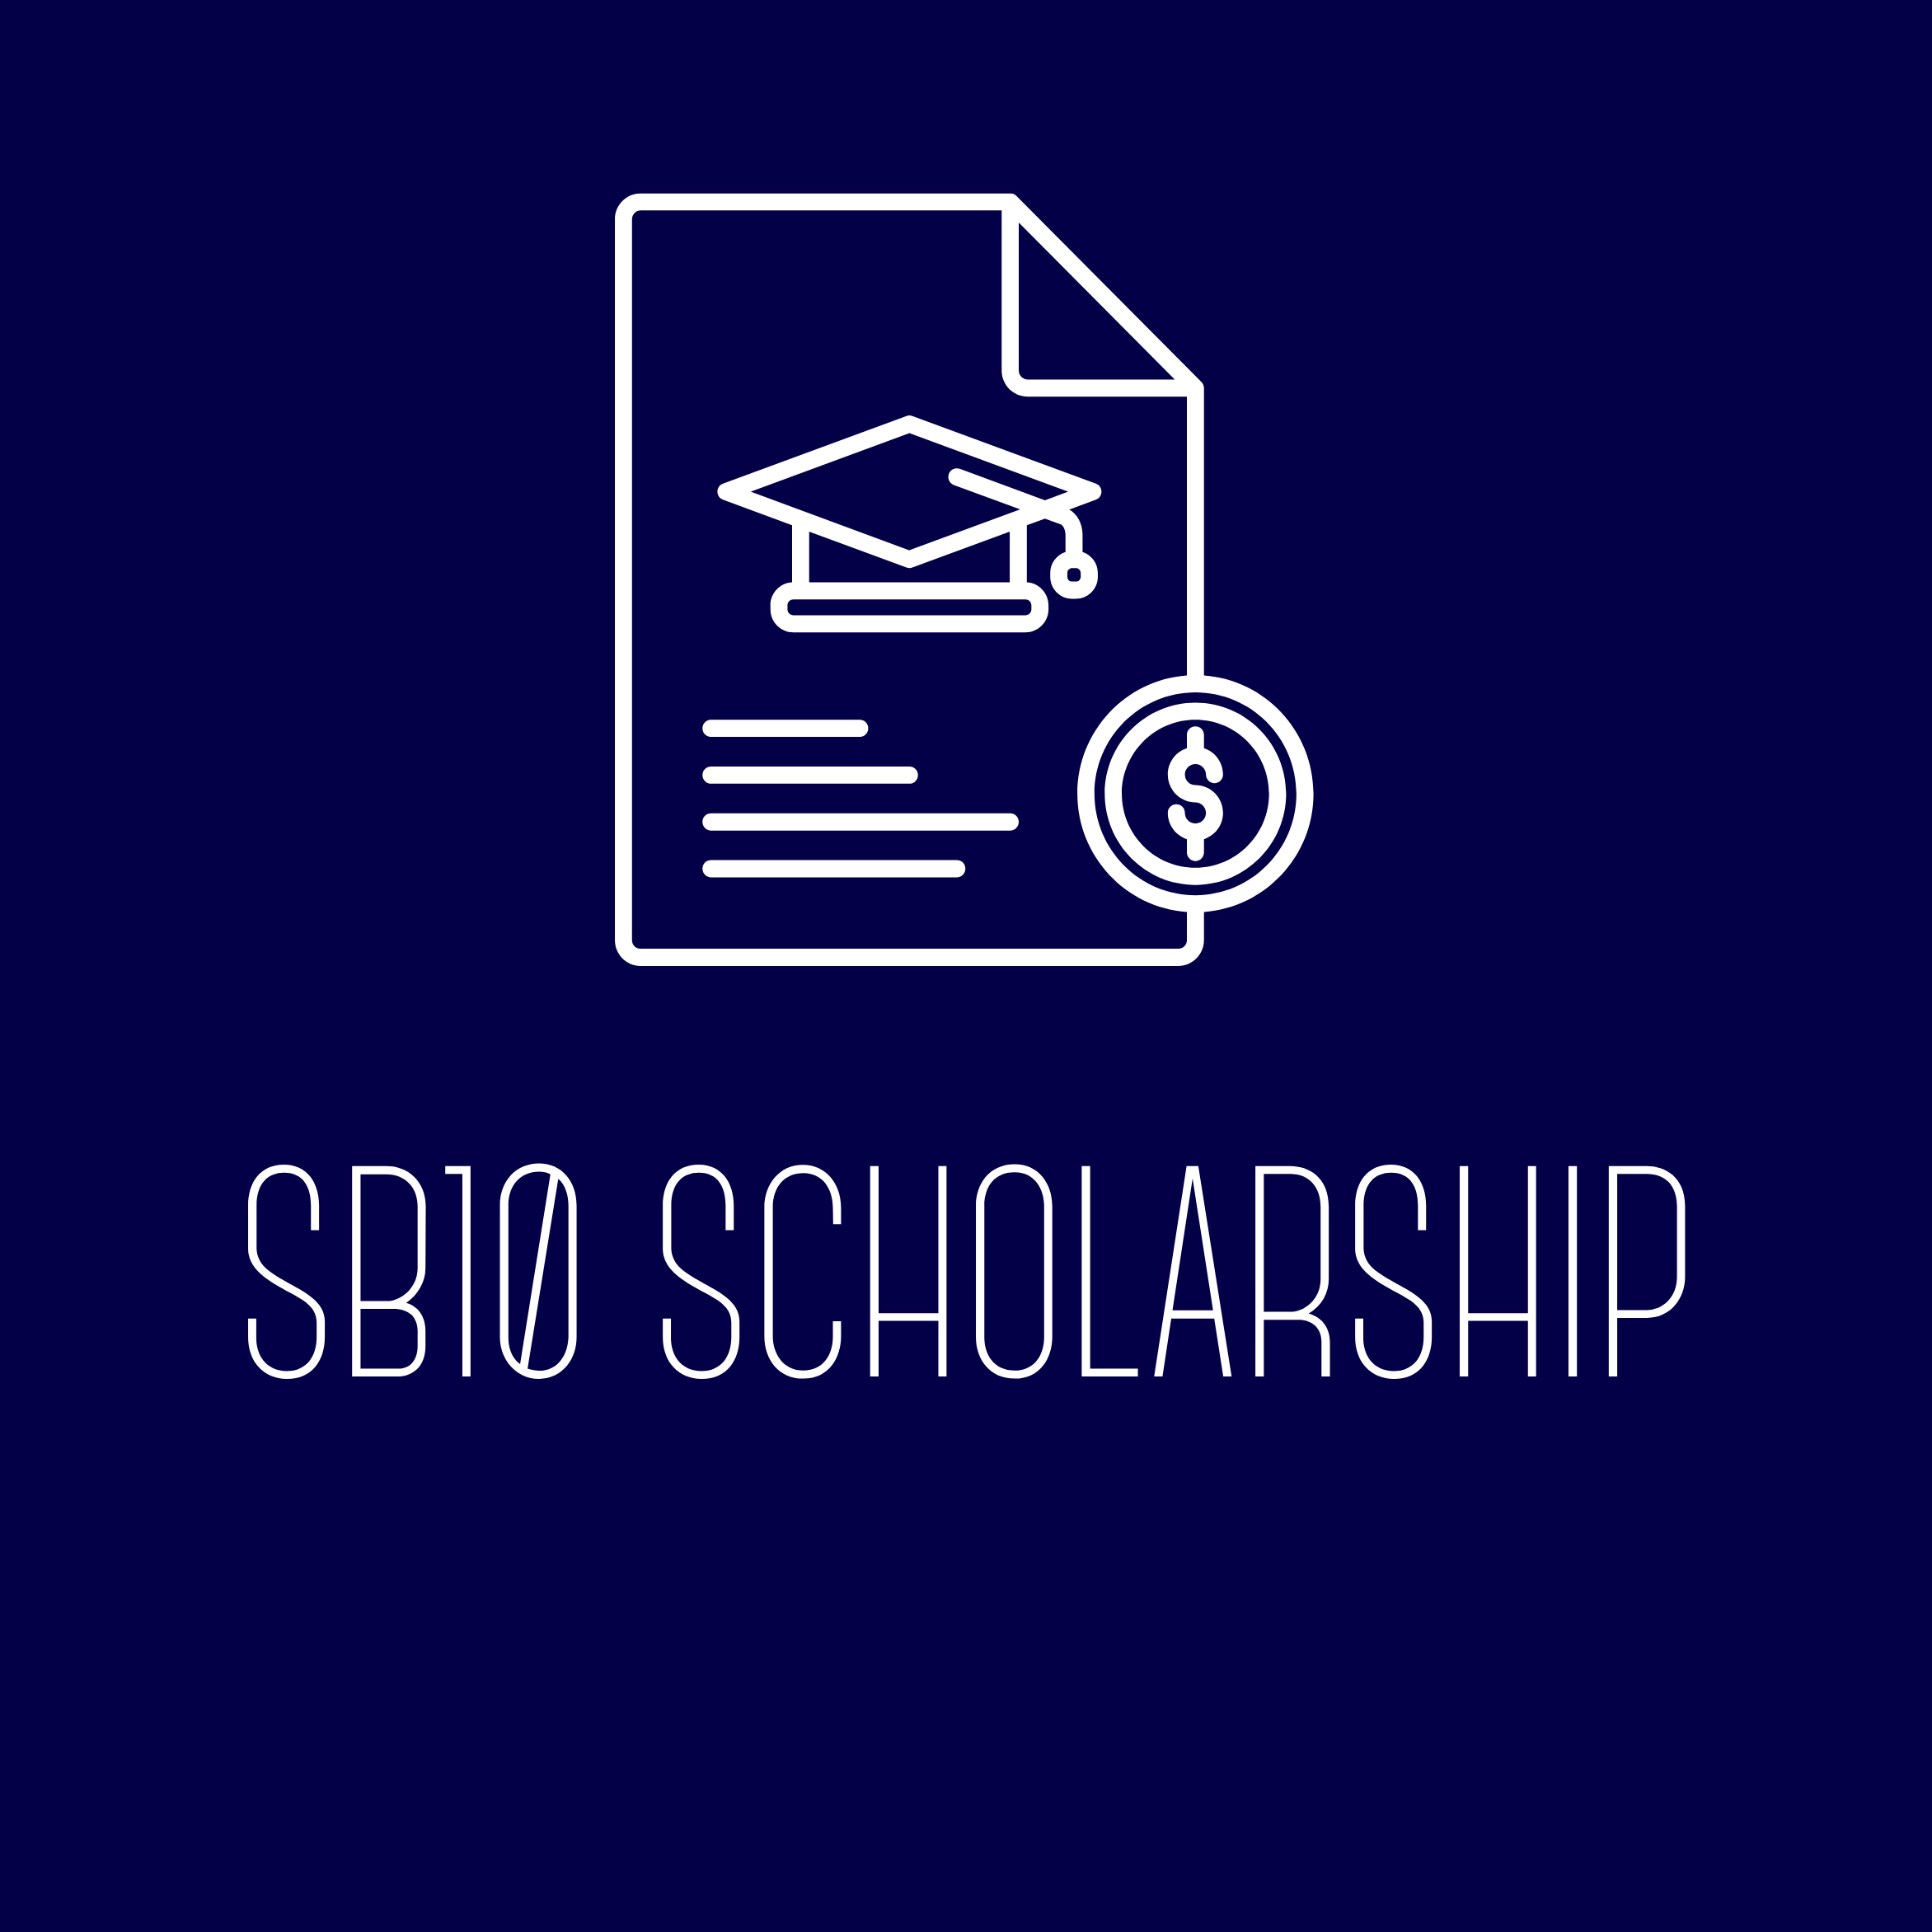 SB10 Scholarship